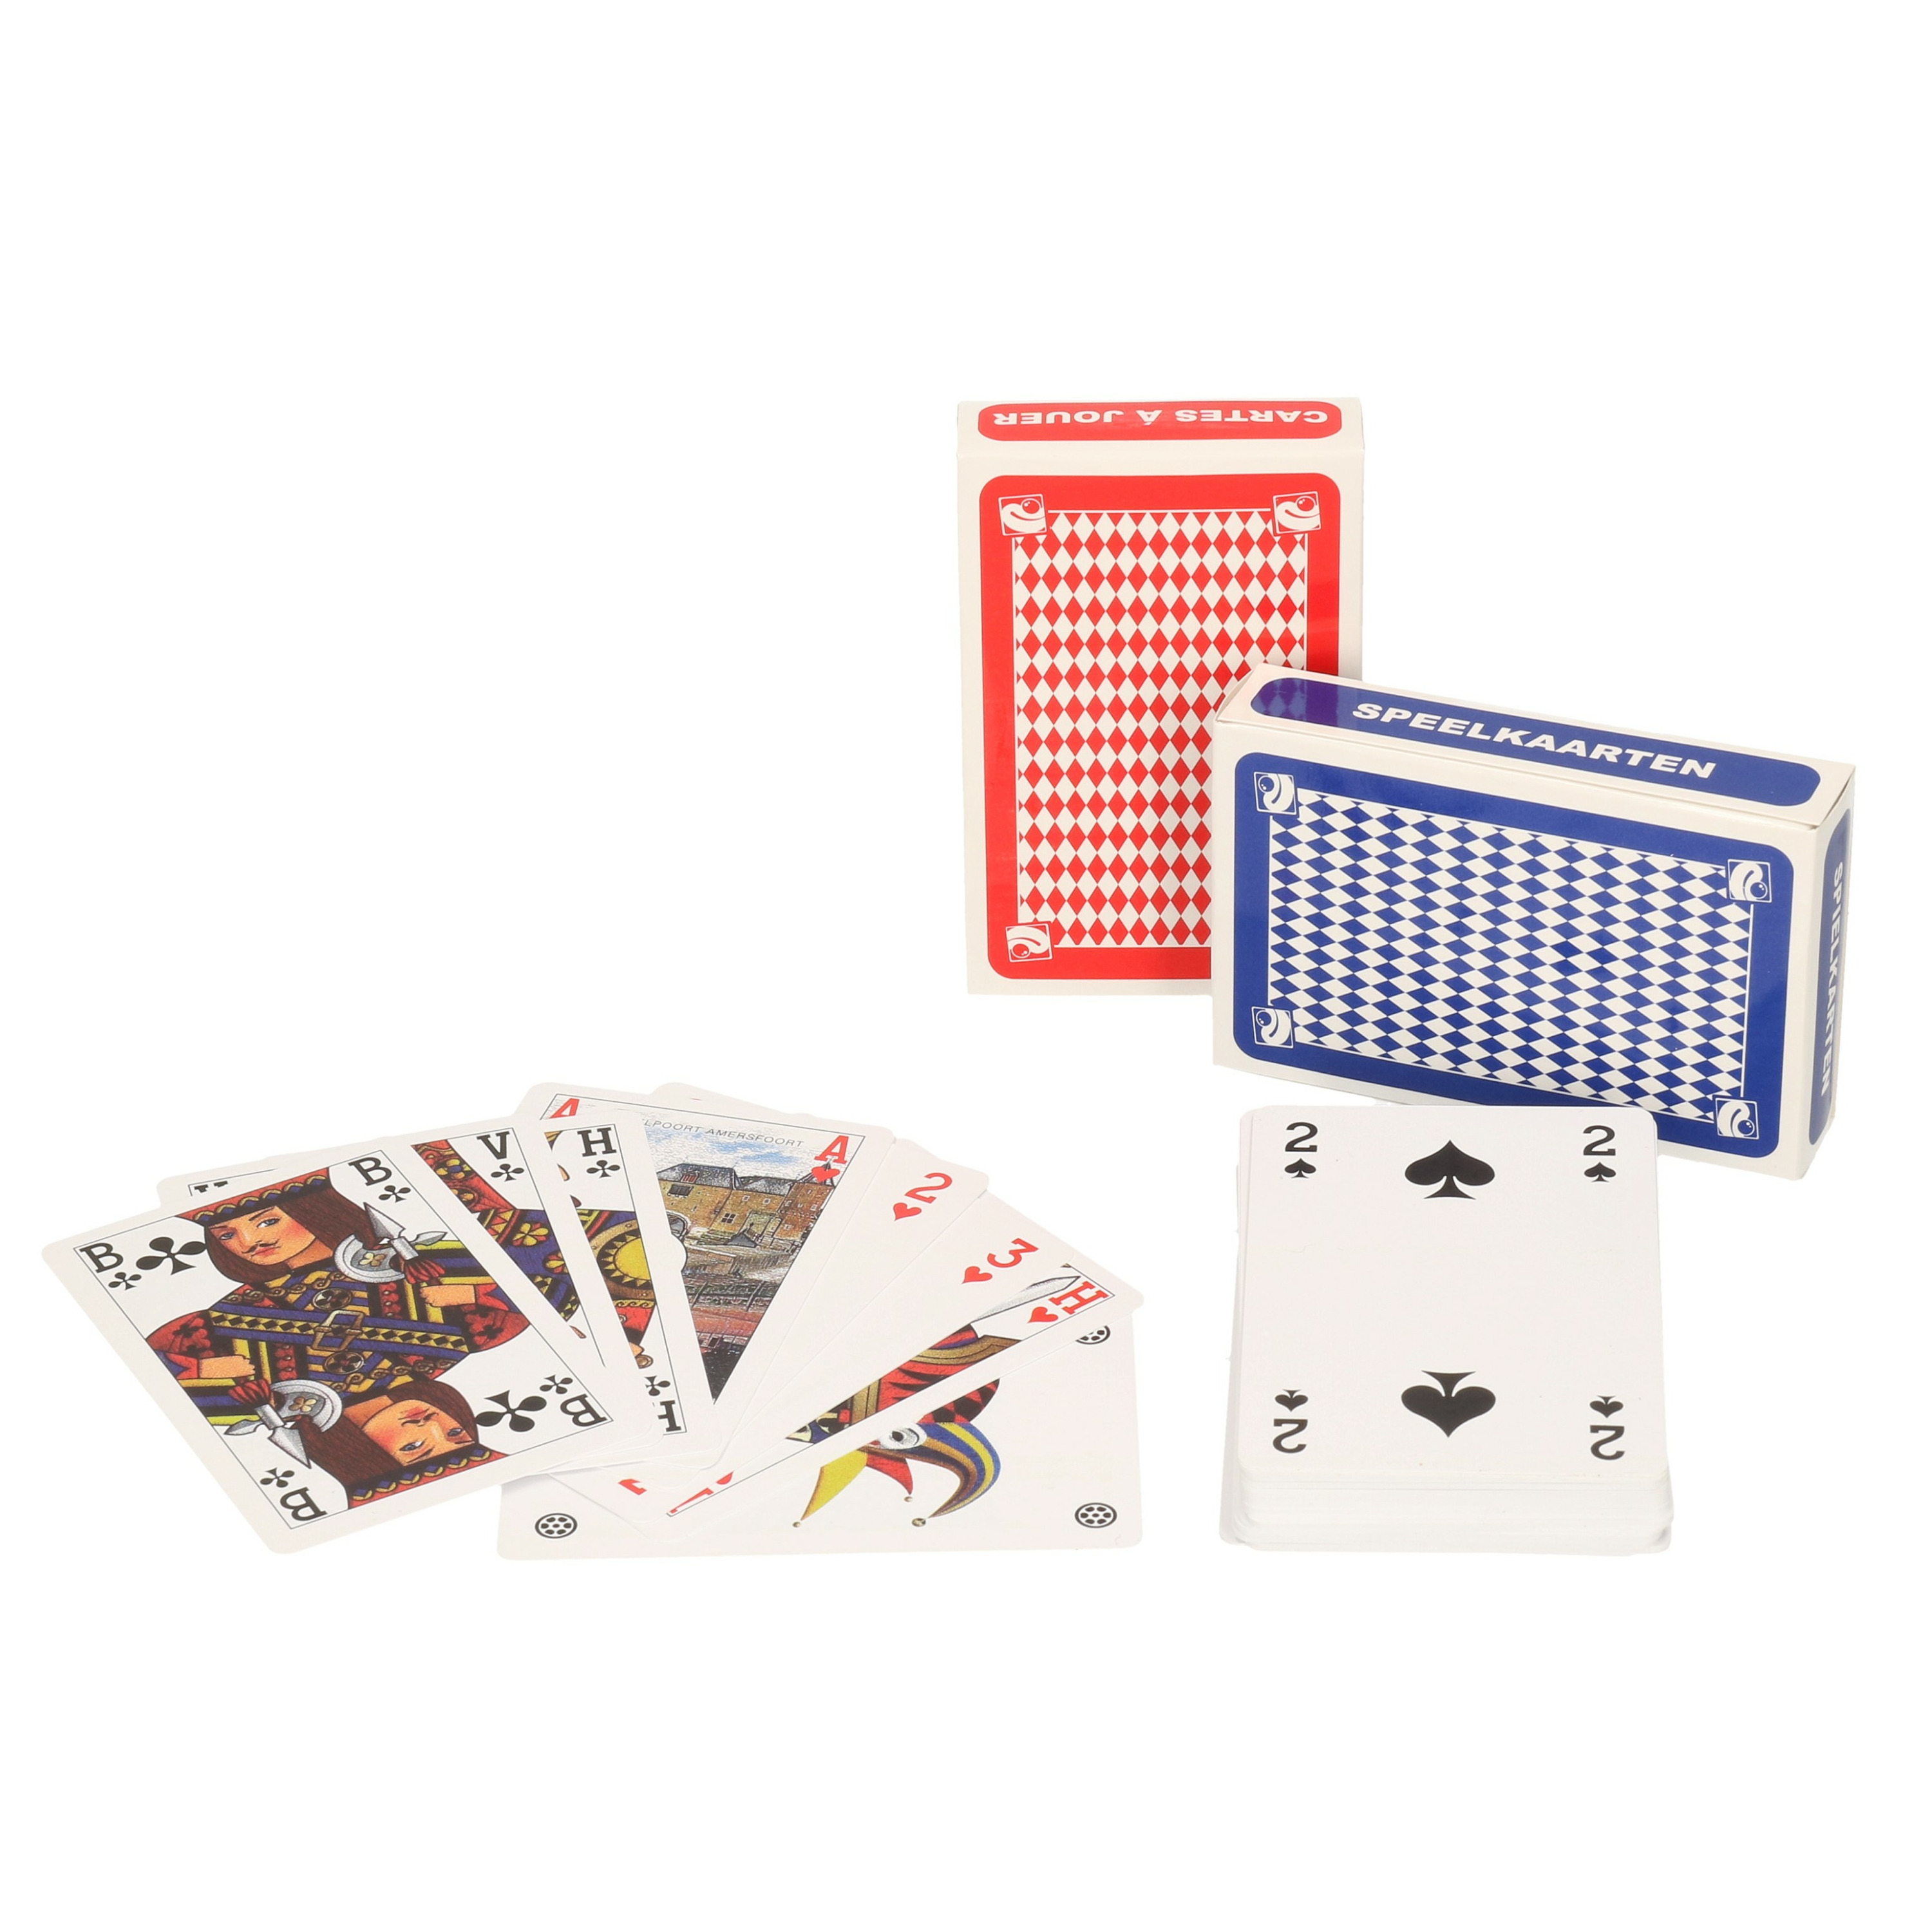 Afbeelding van Set van 6x clown games speelkaarten rood en blauw/kartonnen kaarten